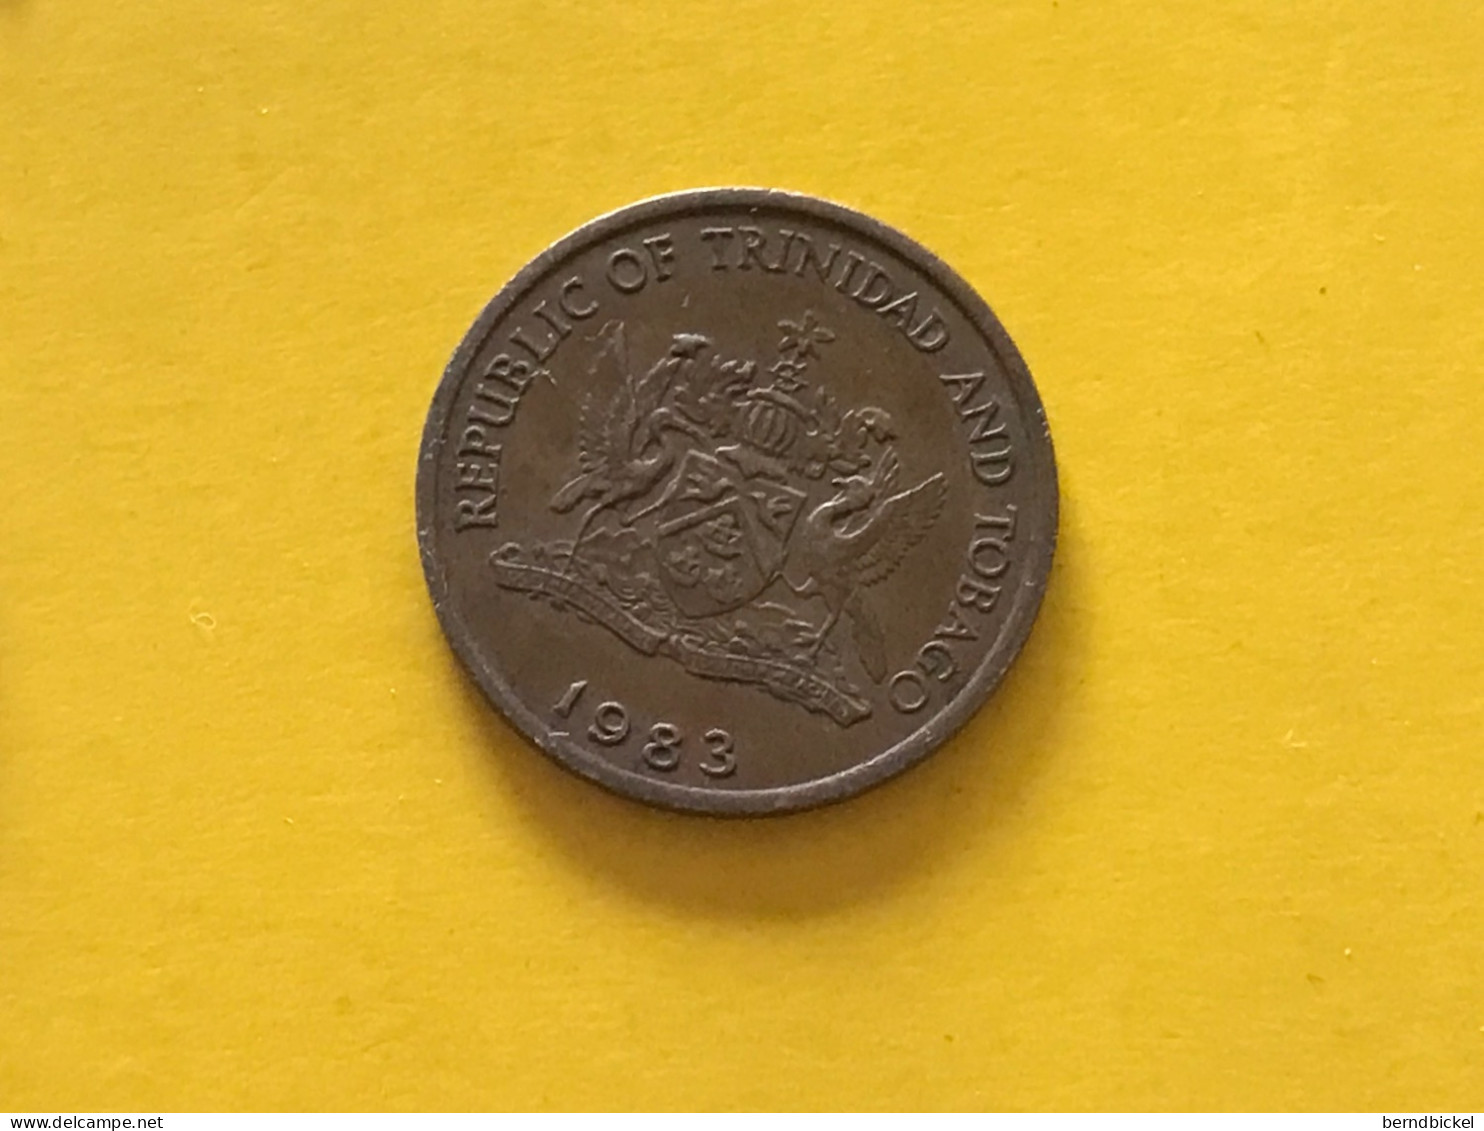 Münze Münzen Umlaufmünze Trinidad & Tobago 1 Cent 1983 - Trinidad & Tobago